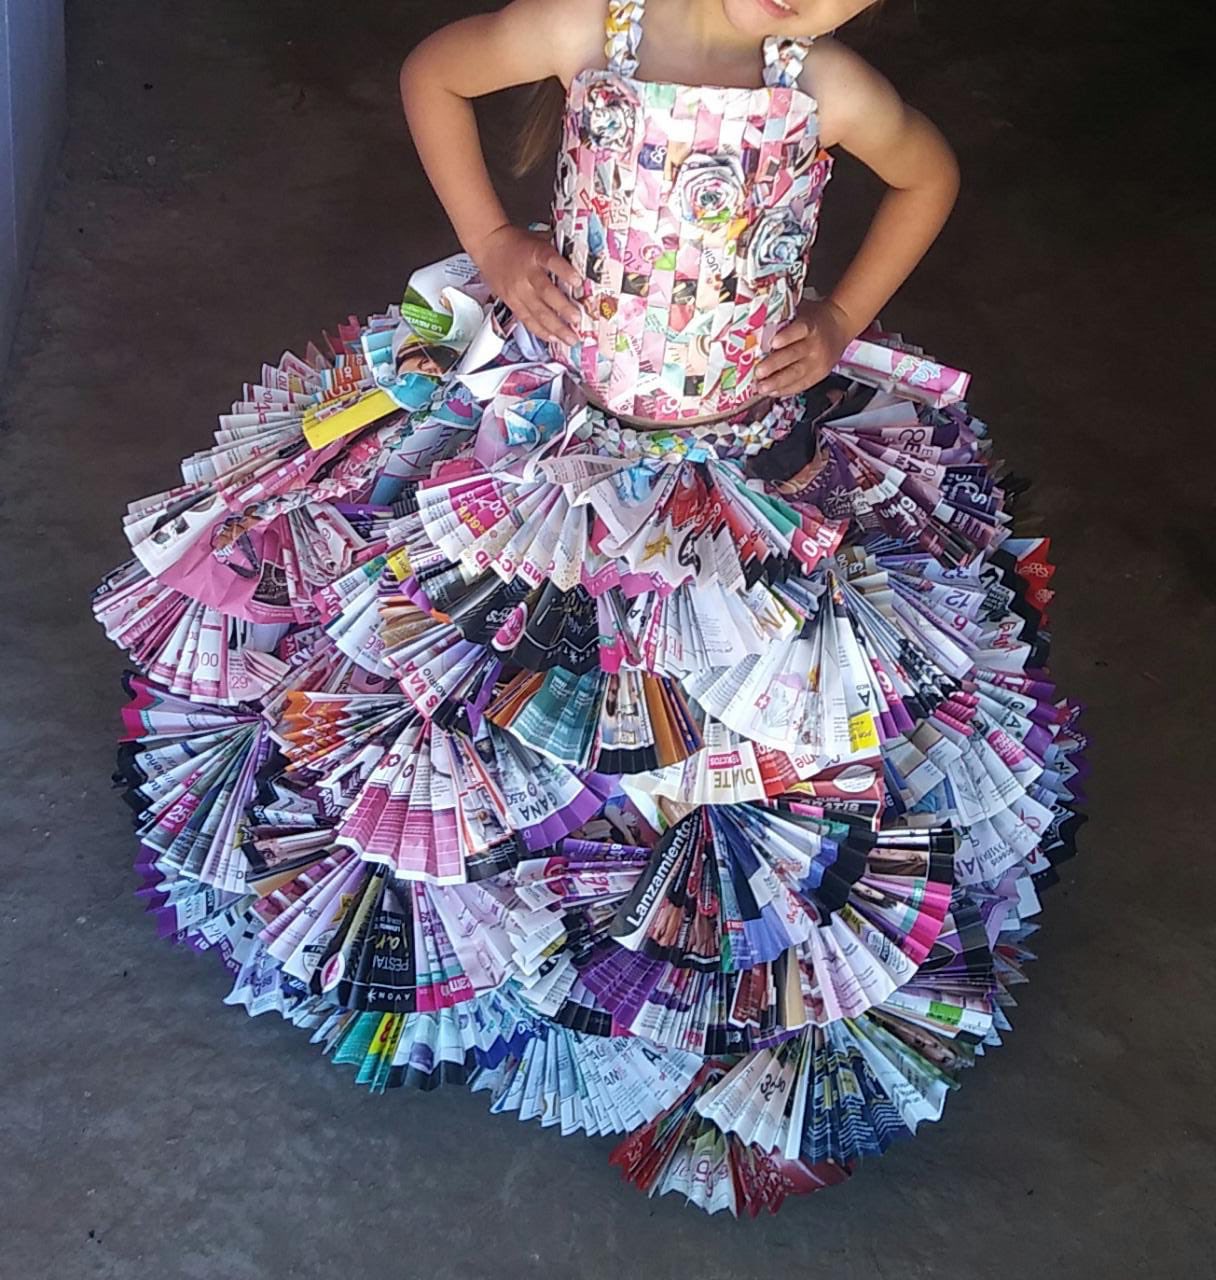 Pilar Espino auf Twitter: „Trajes típicos hechos con material reciclado. Creación de Madres de y LEC la comunidad de La Trampa en el Durazno, Tamazula. En el la creatividad